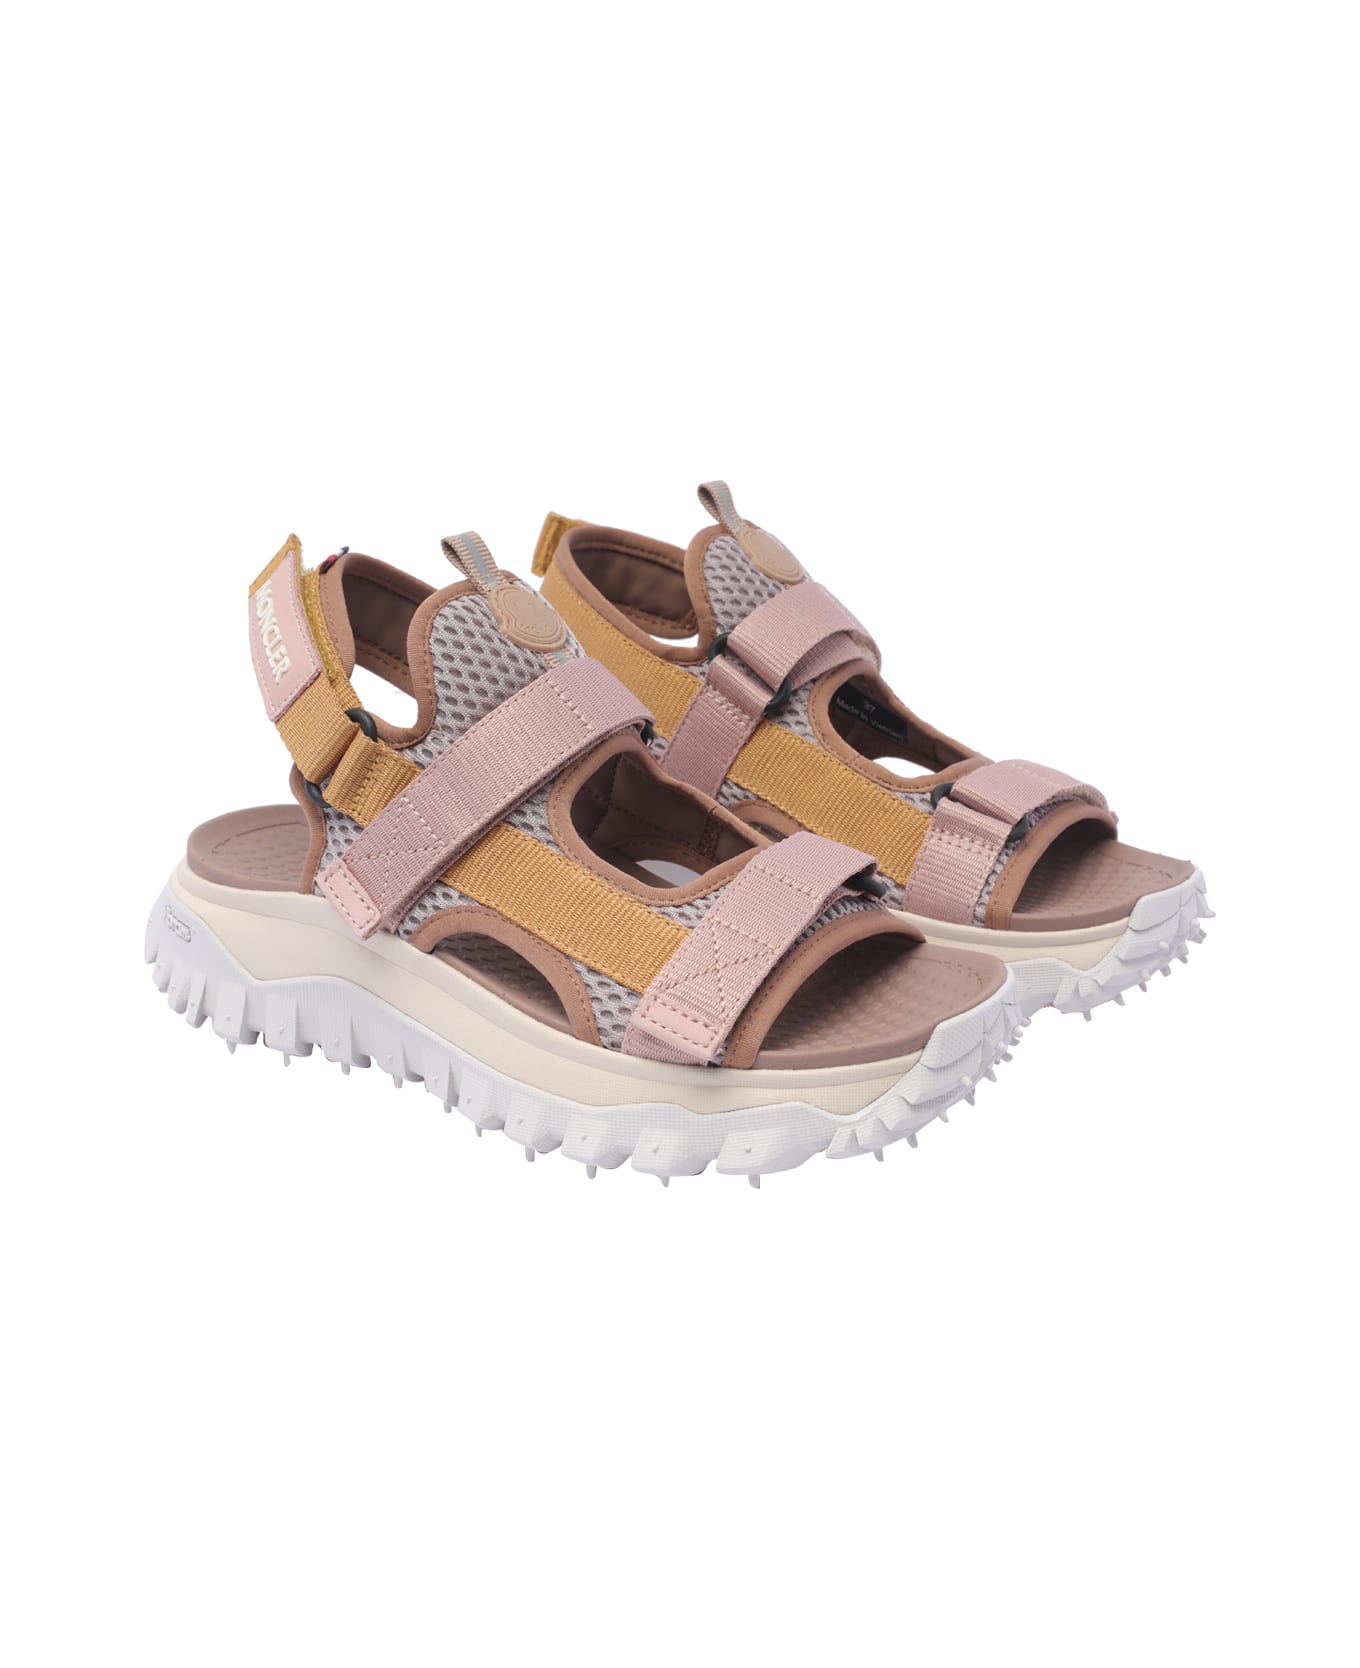 Moncler Trailgrip Vela Sandals - Pink